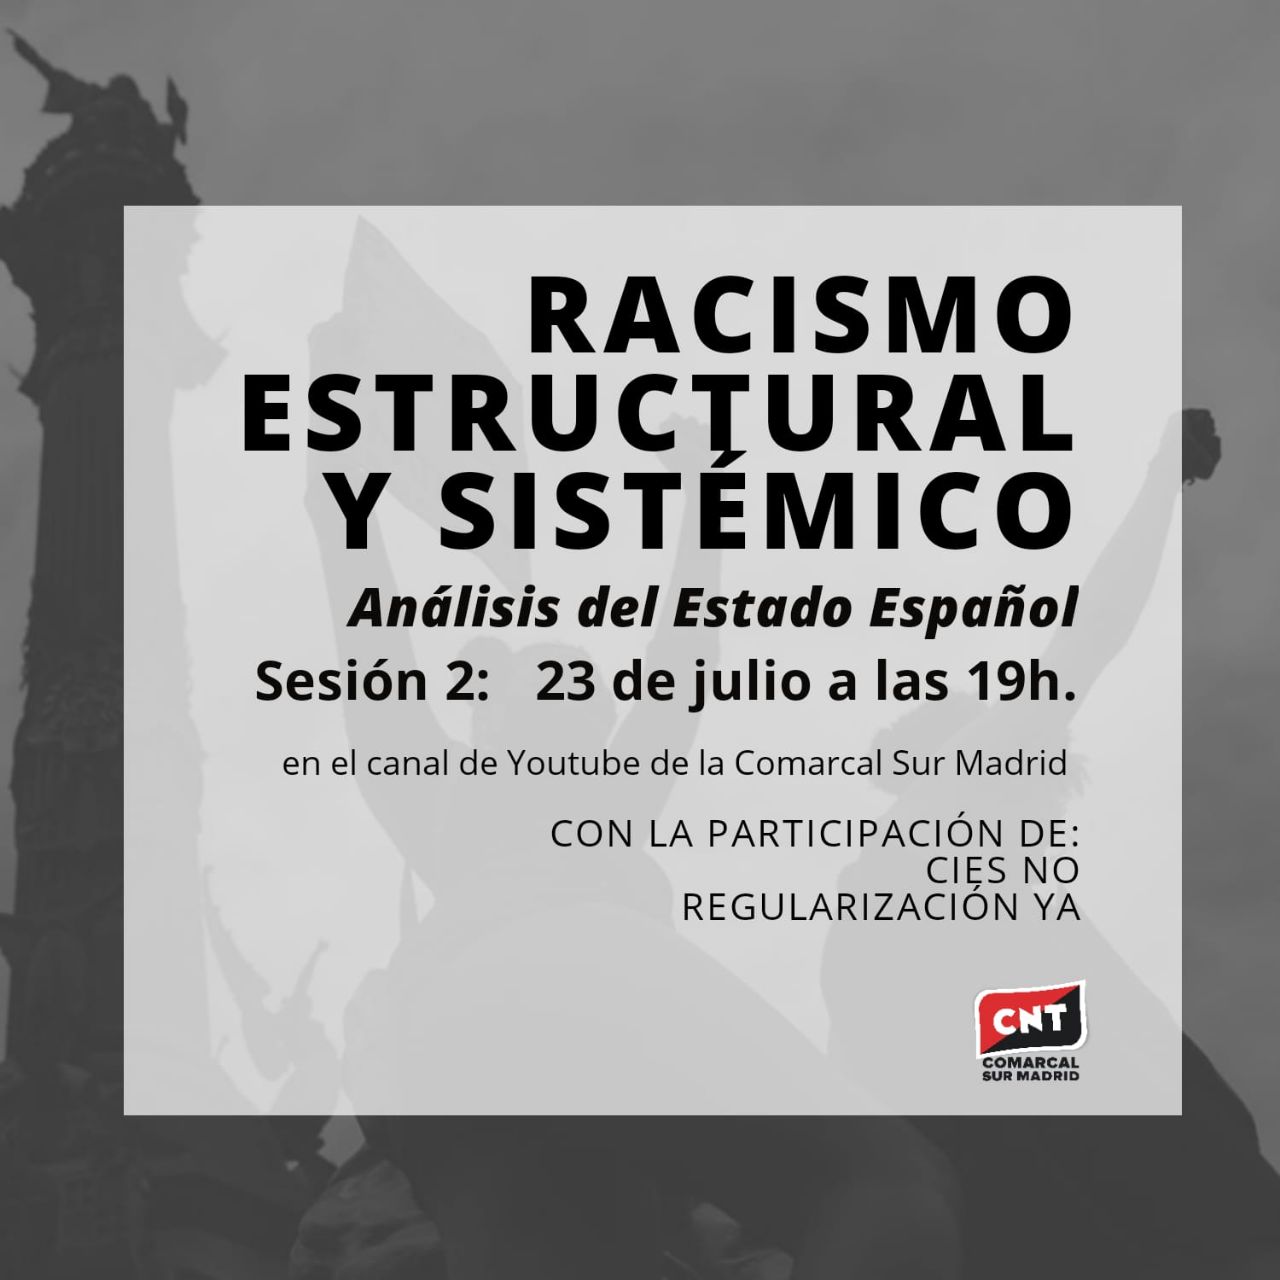 Racismo estructural y sistémico, análisis del estado español II